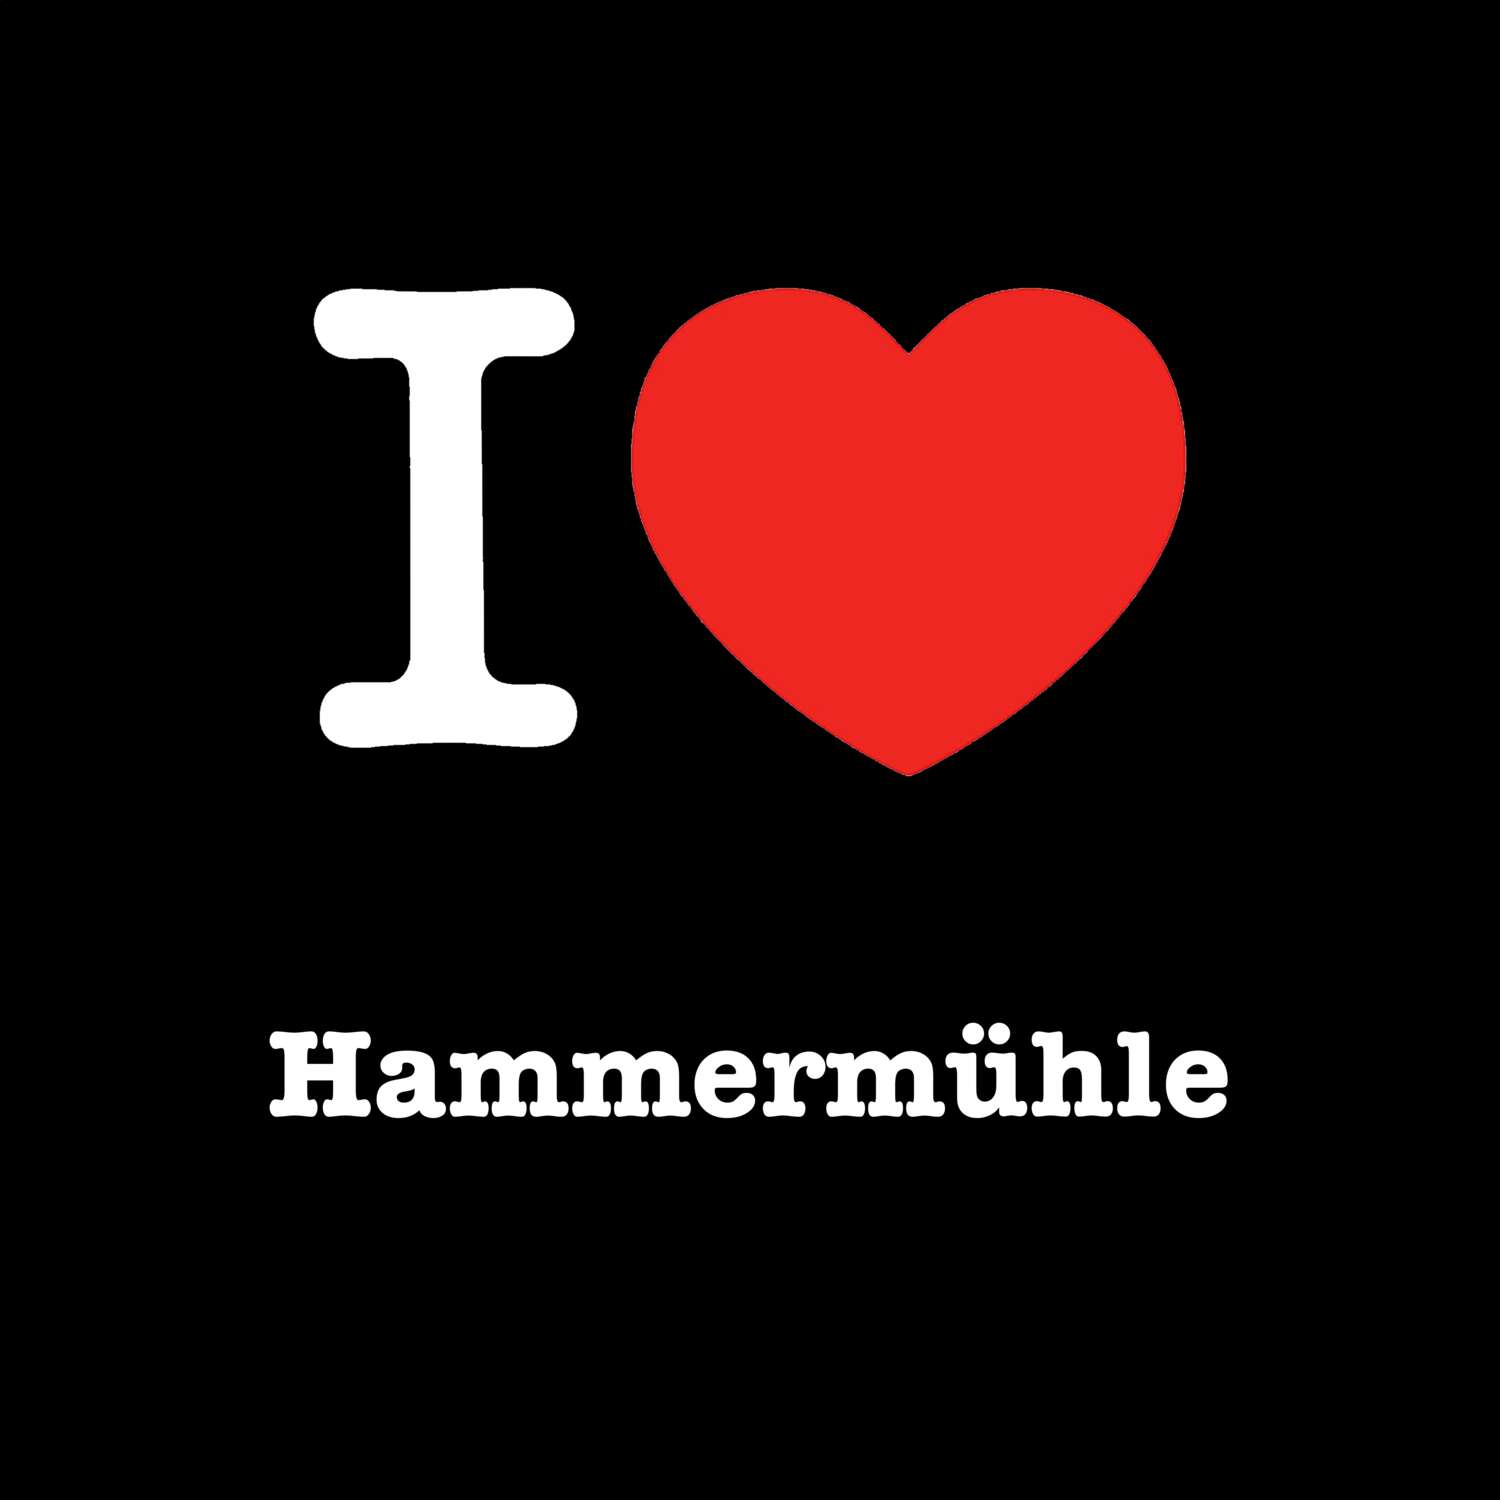 Hammermühle T-Shirt »I love«